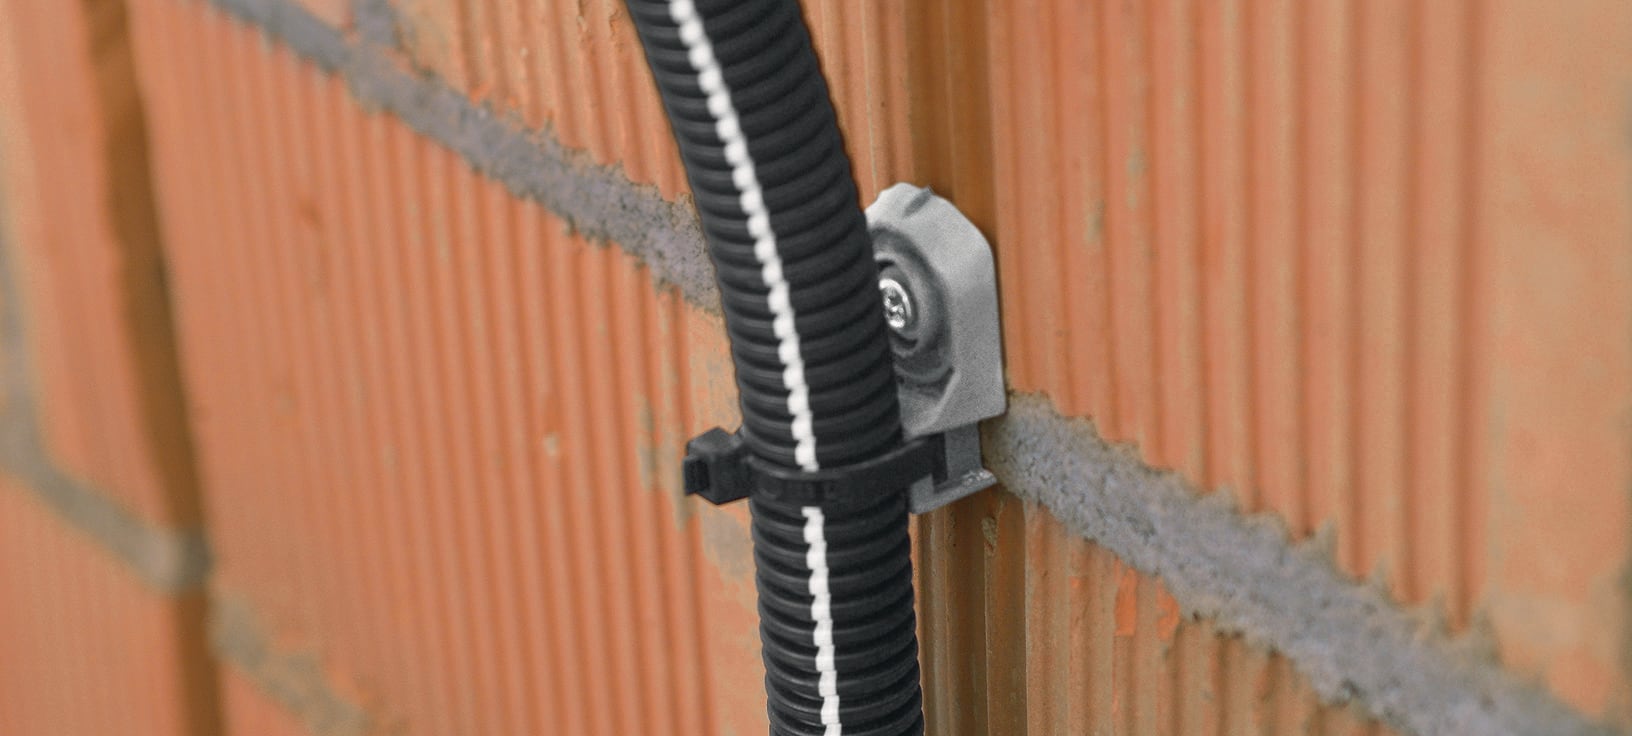 Support de câble de rupture en acier galvanisé pour montage sur l'attelage  de remorque. Réglementation en Suisse et aux Pays-Bas. En Suisse uniquement